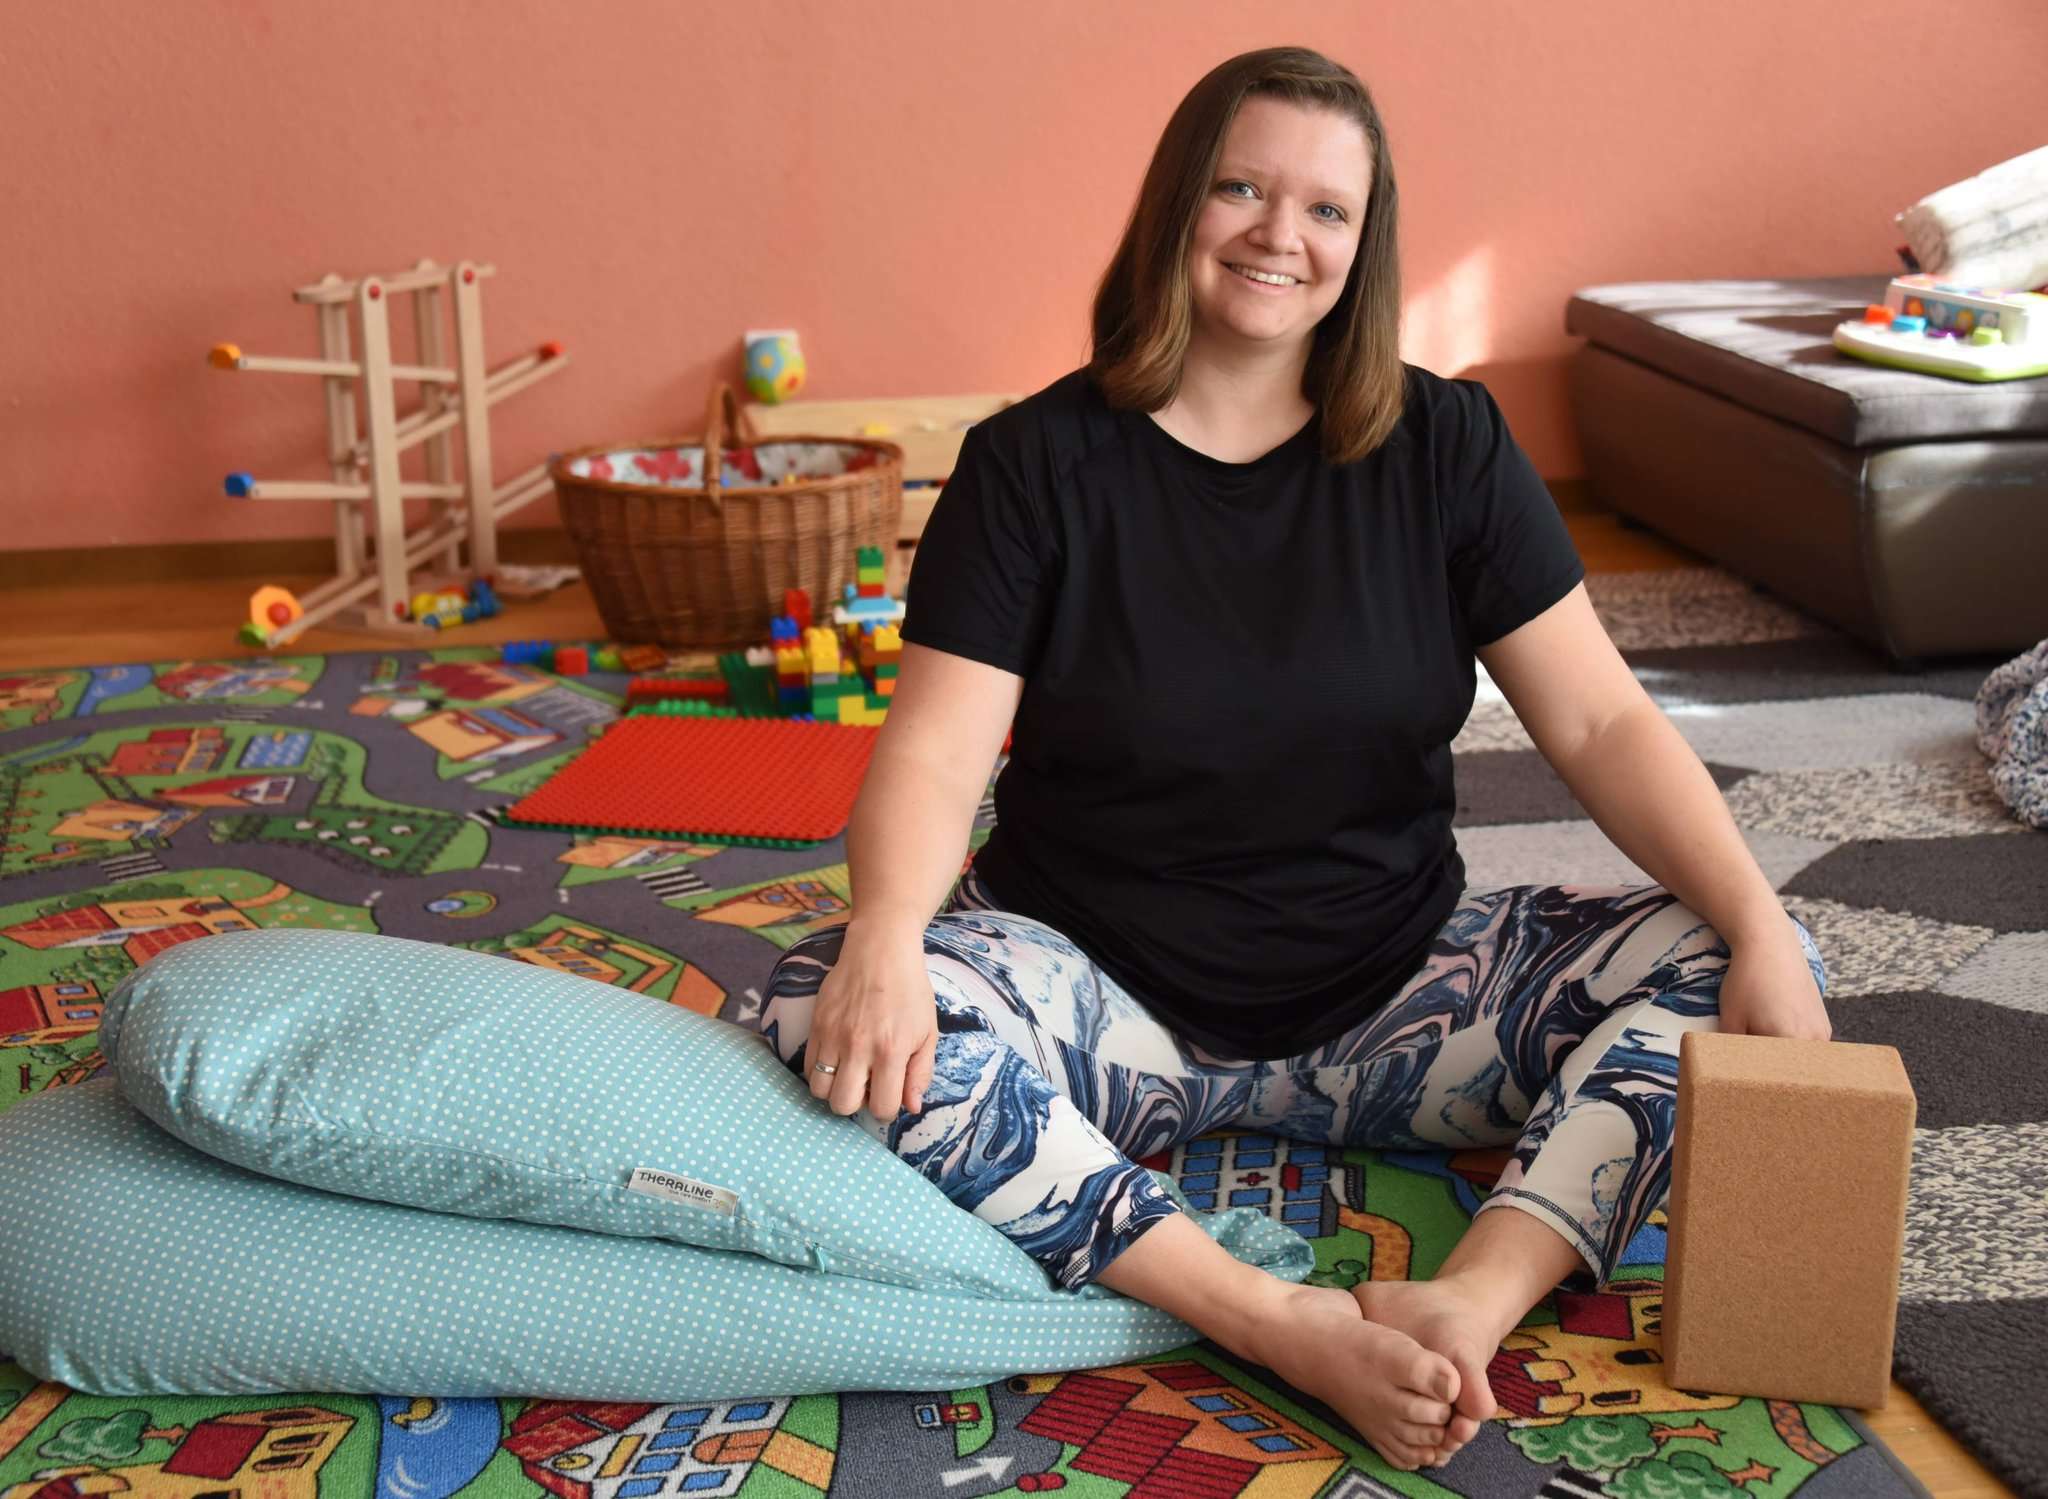 Stillkissen und Block statt Pult und Klassenbuch: Die zweifache Mutter Jasmin Stoll ließ den Job als Lehrerin hinter sich, um Menschen mit Yoga zu helfen. Foto: Schultz